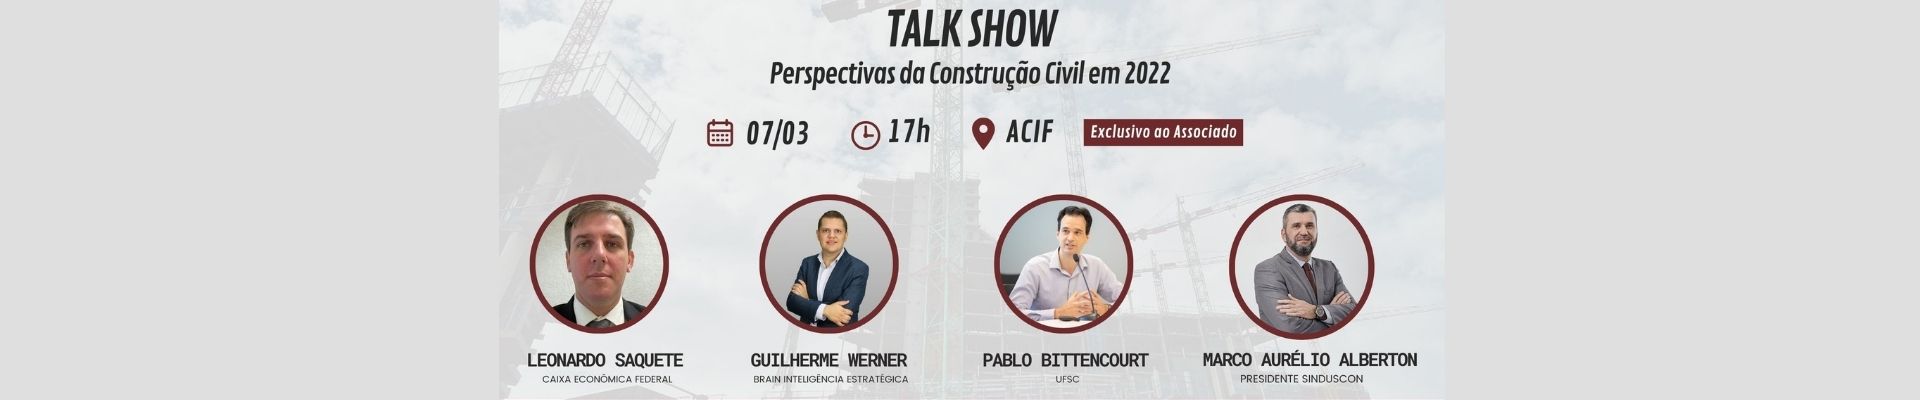 Florianópolis será palco de talk show sobre as perspectivas da construção civil em 2022